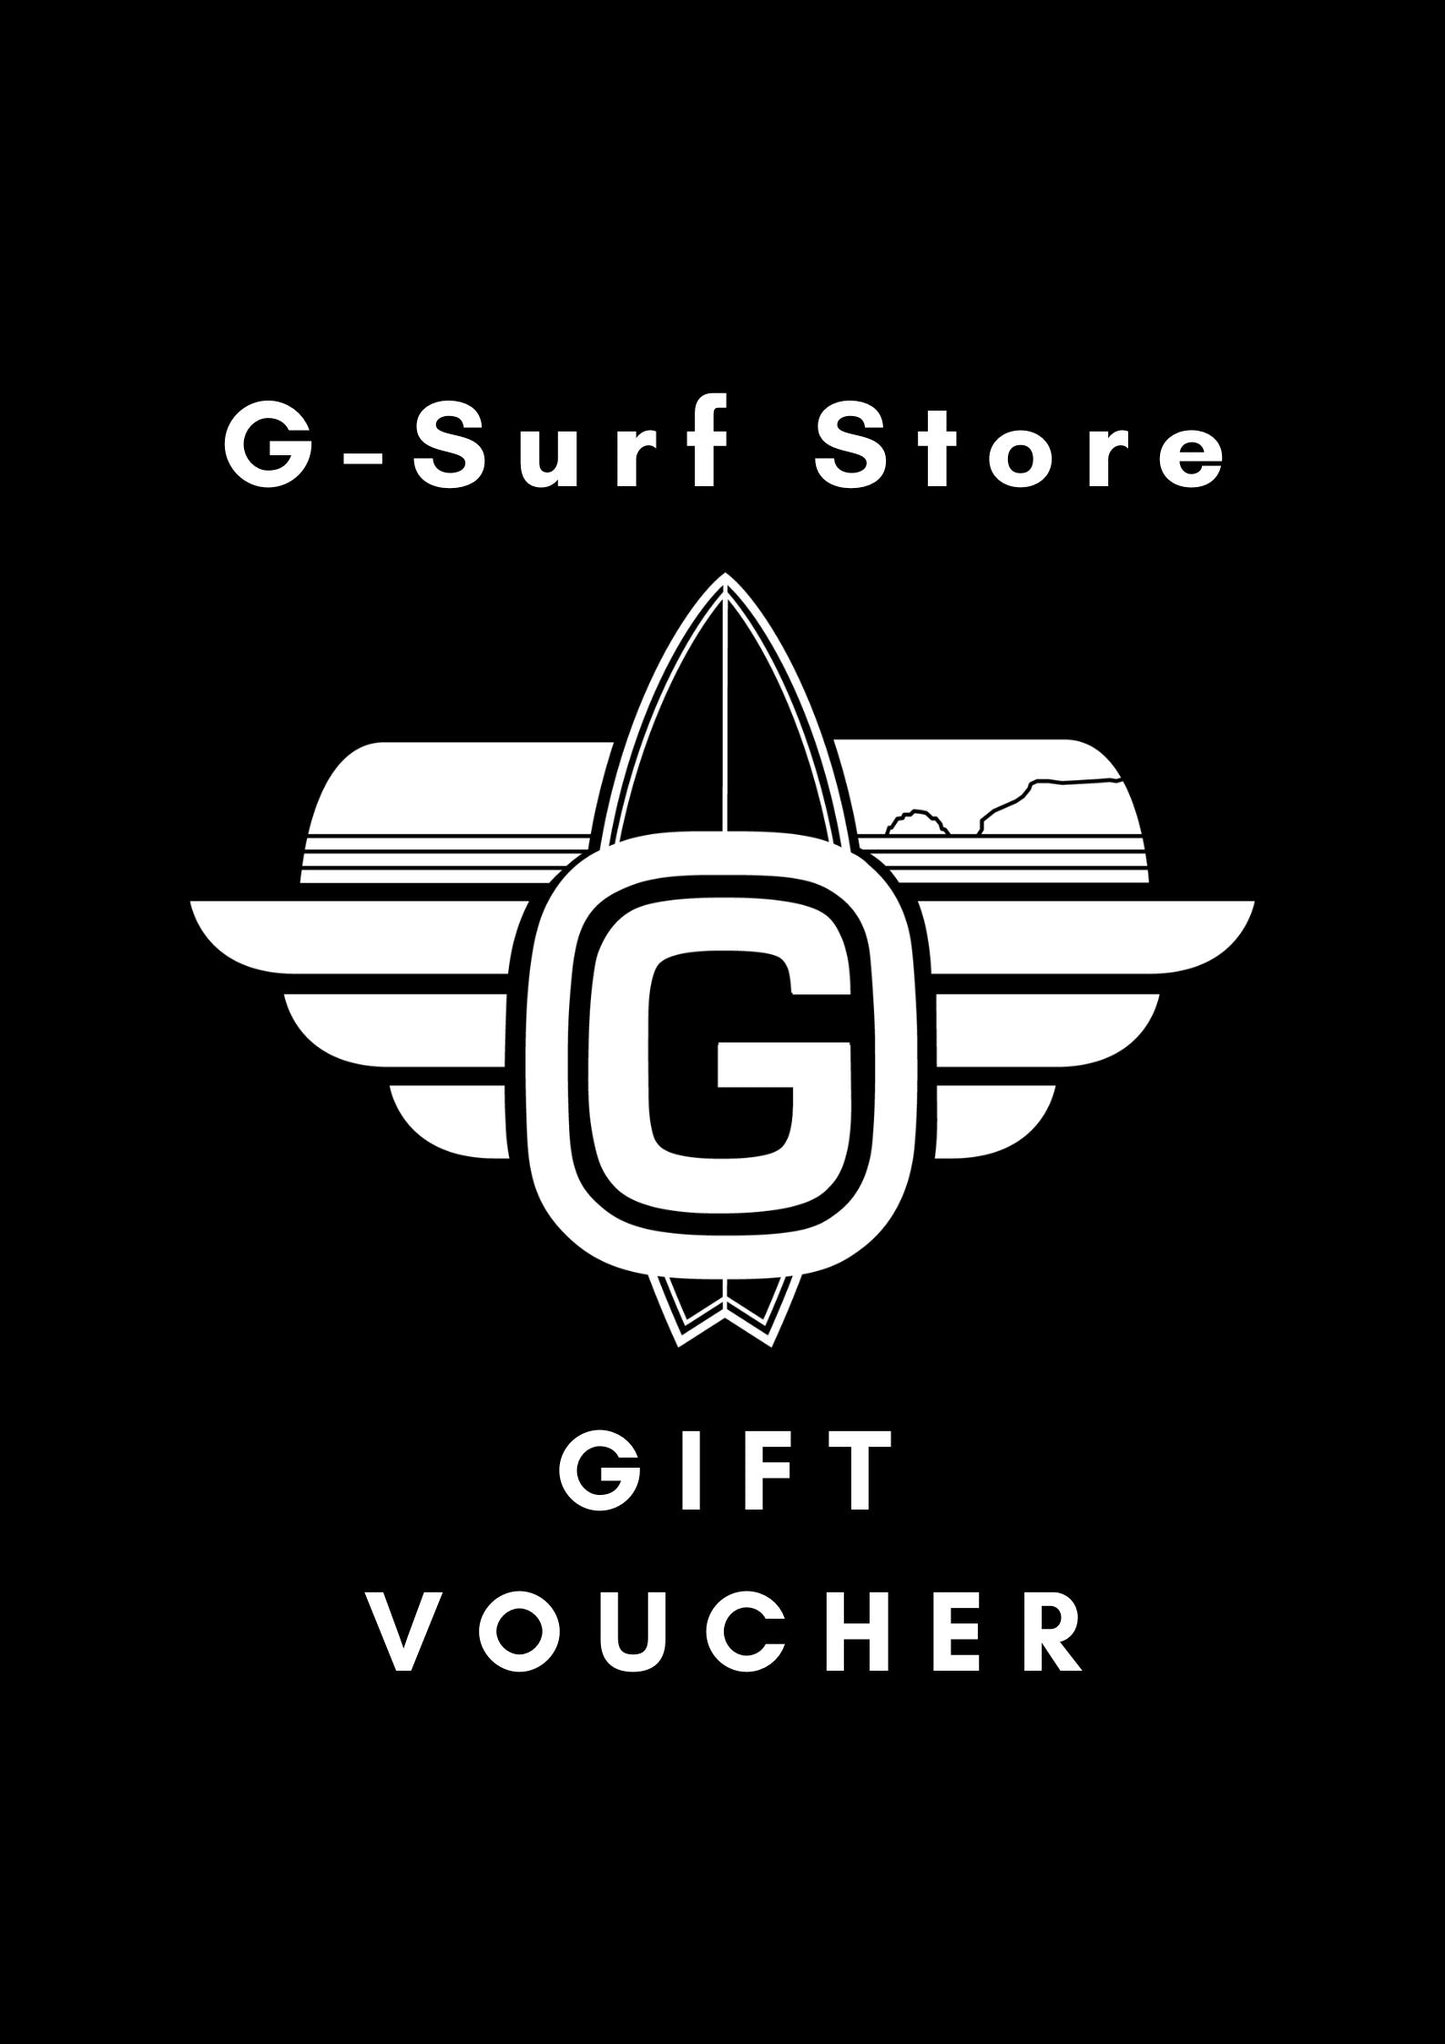 G-Surf Store Gift Voucher